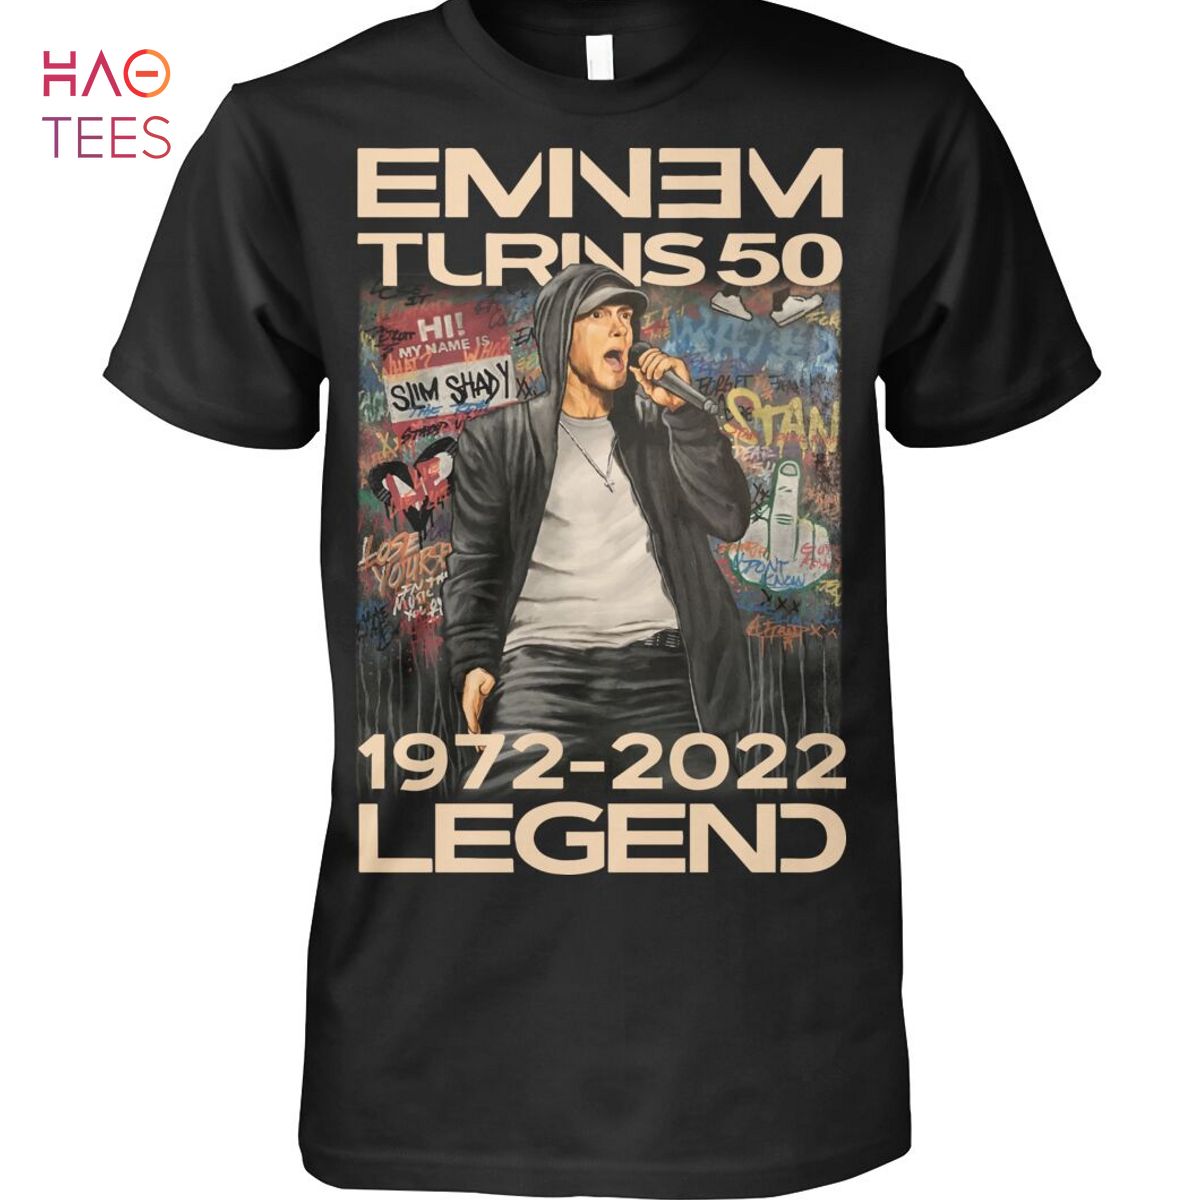 Emnem Turns50 1972-2022 Legend Shirt